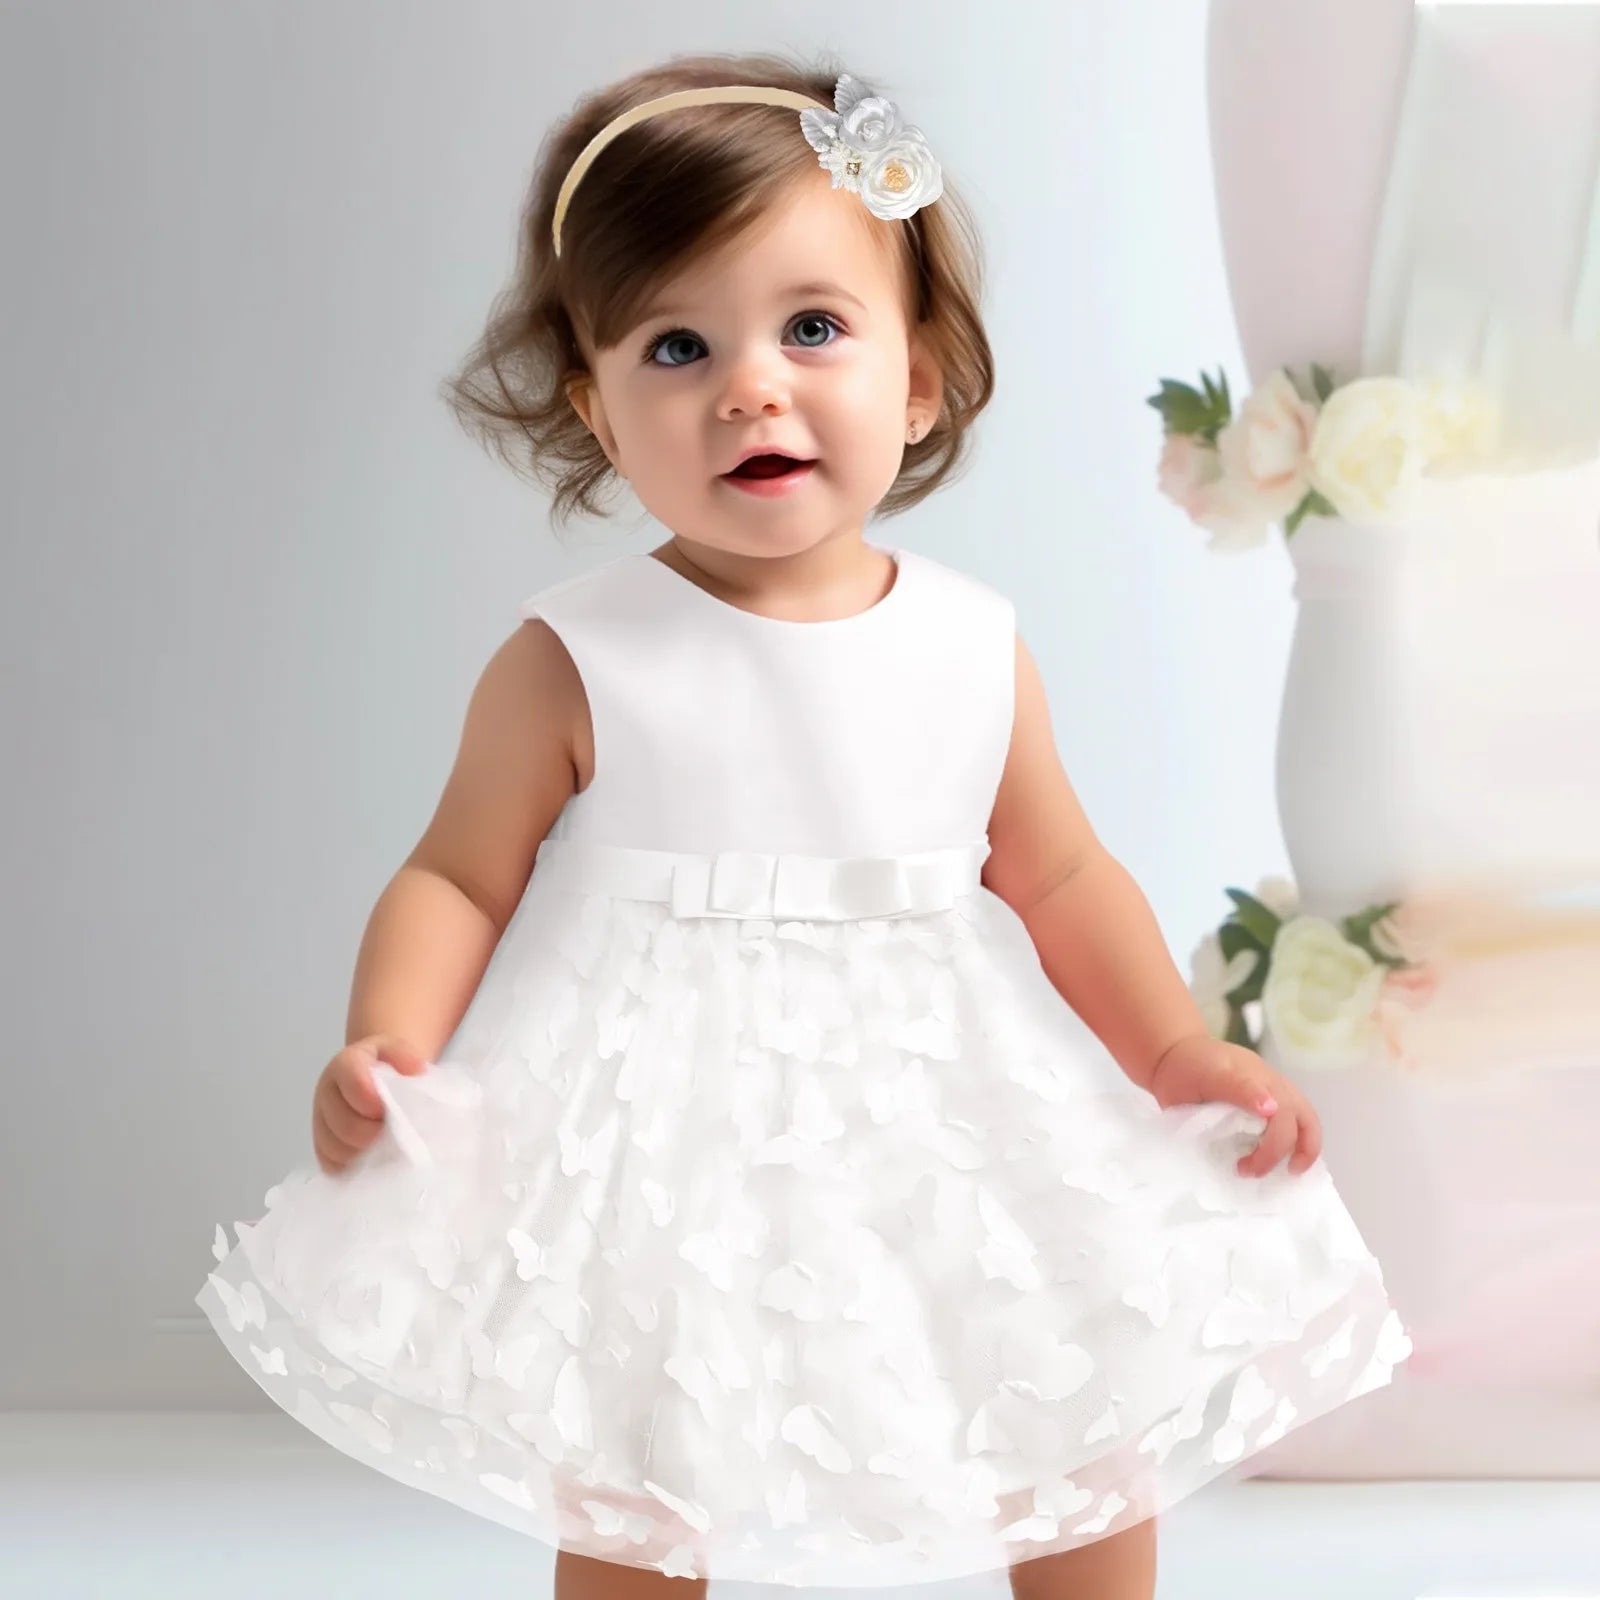 Infant Sleeveless Birthday Party Dress White United States by Baby Minaj Cruz